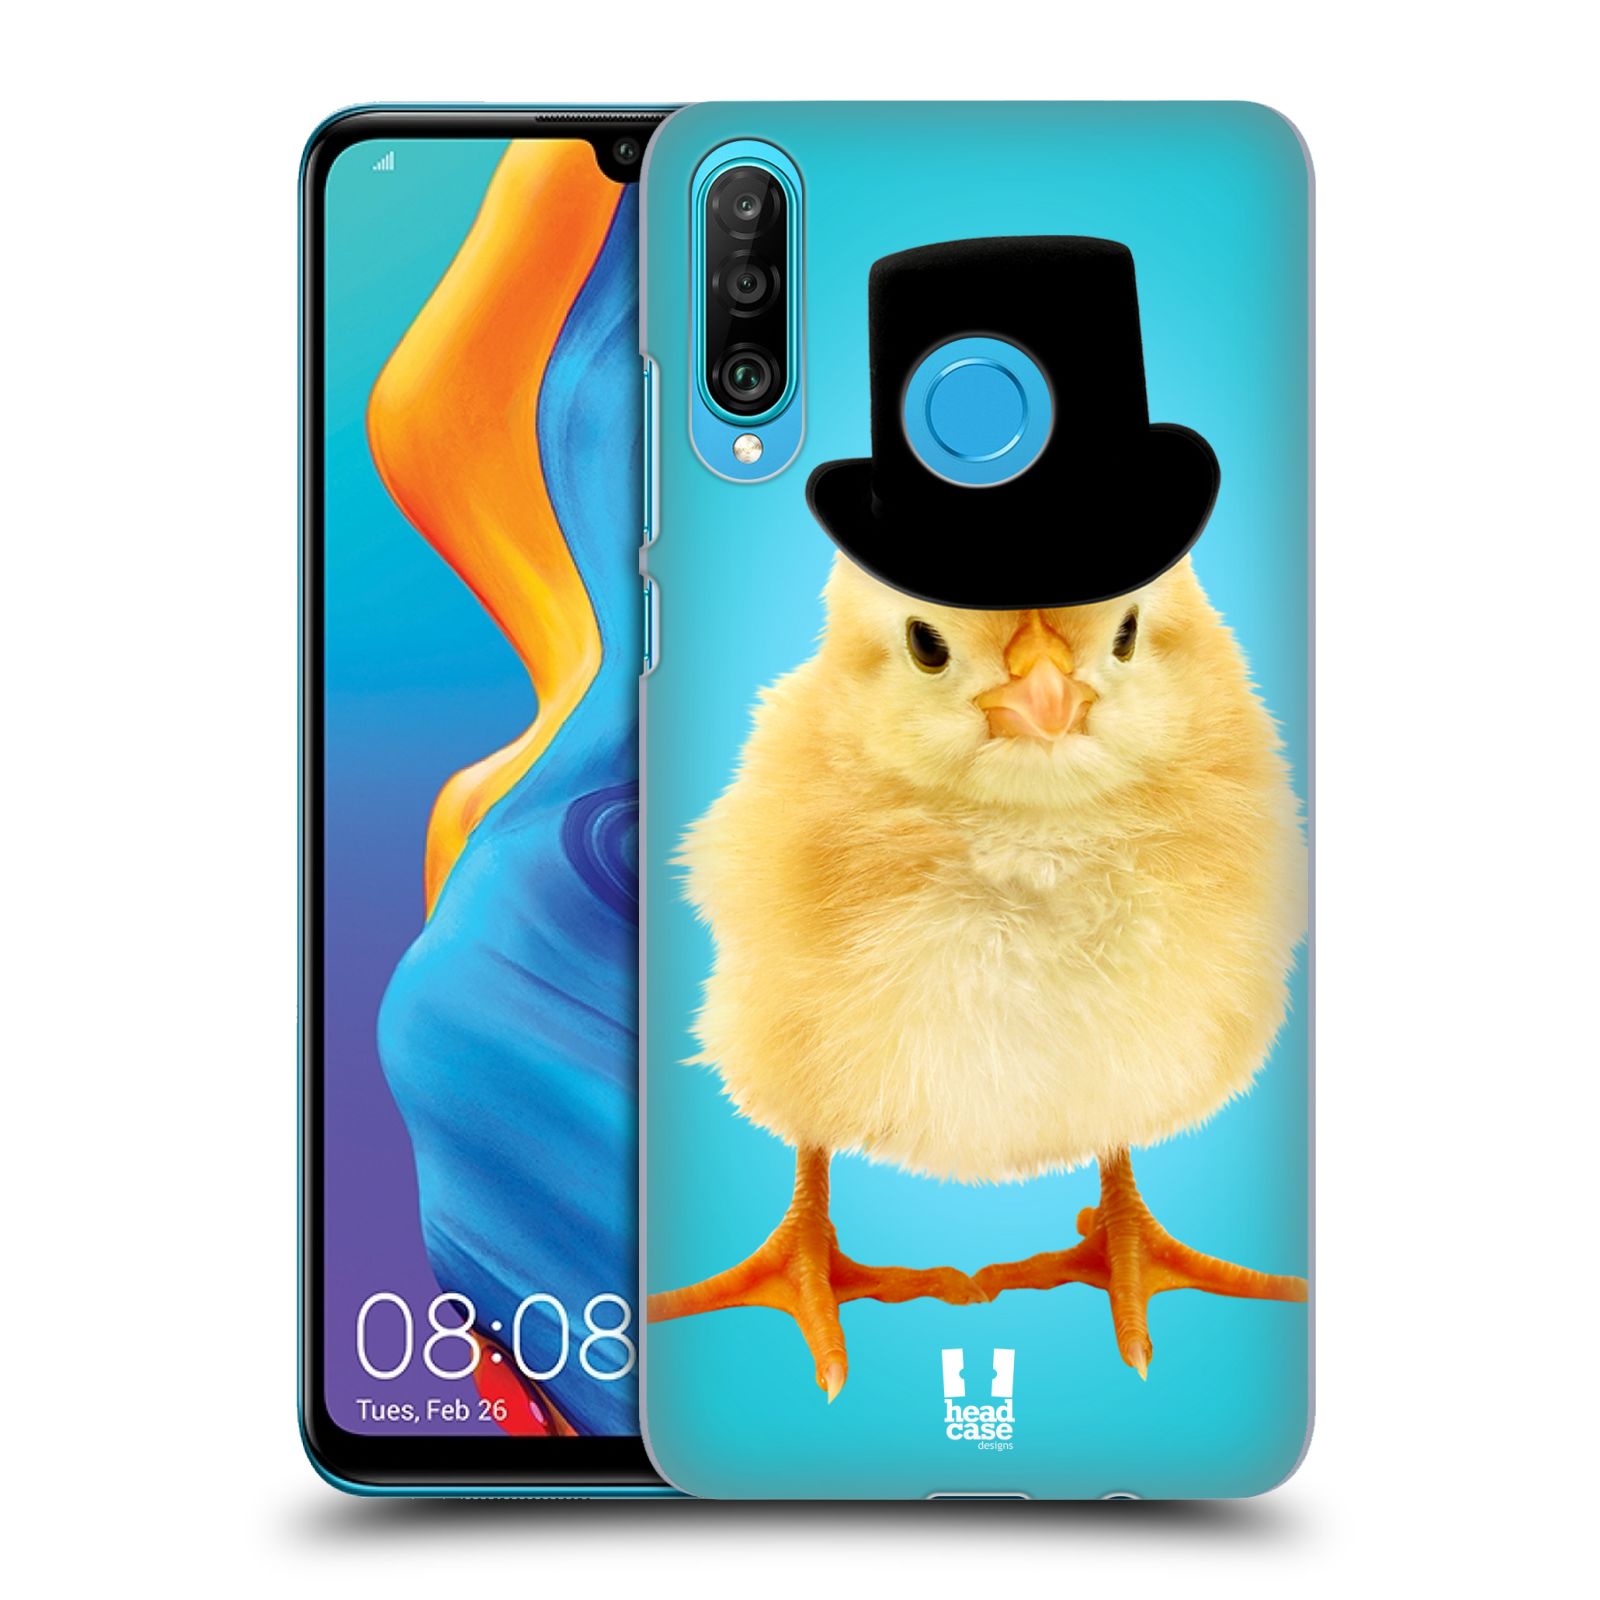 Pouzdro na mobil Huawei P30 LITE - HEAD CASE - vzor Legrační zvířátka Mr. kuřátko